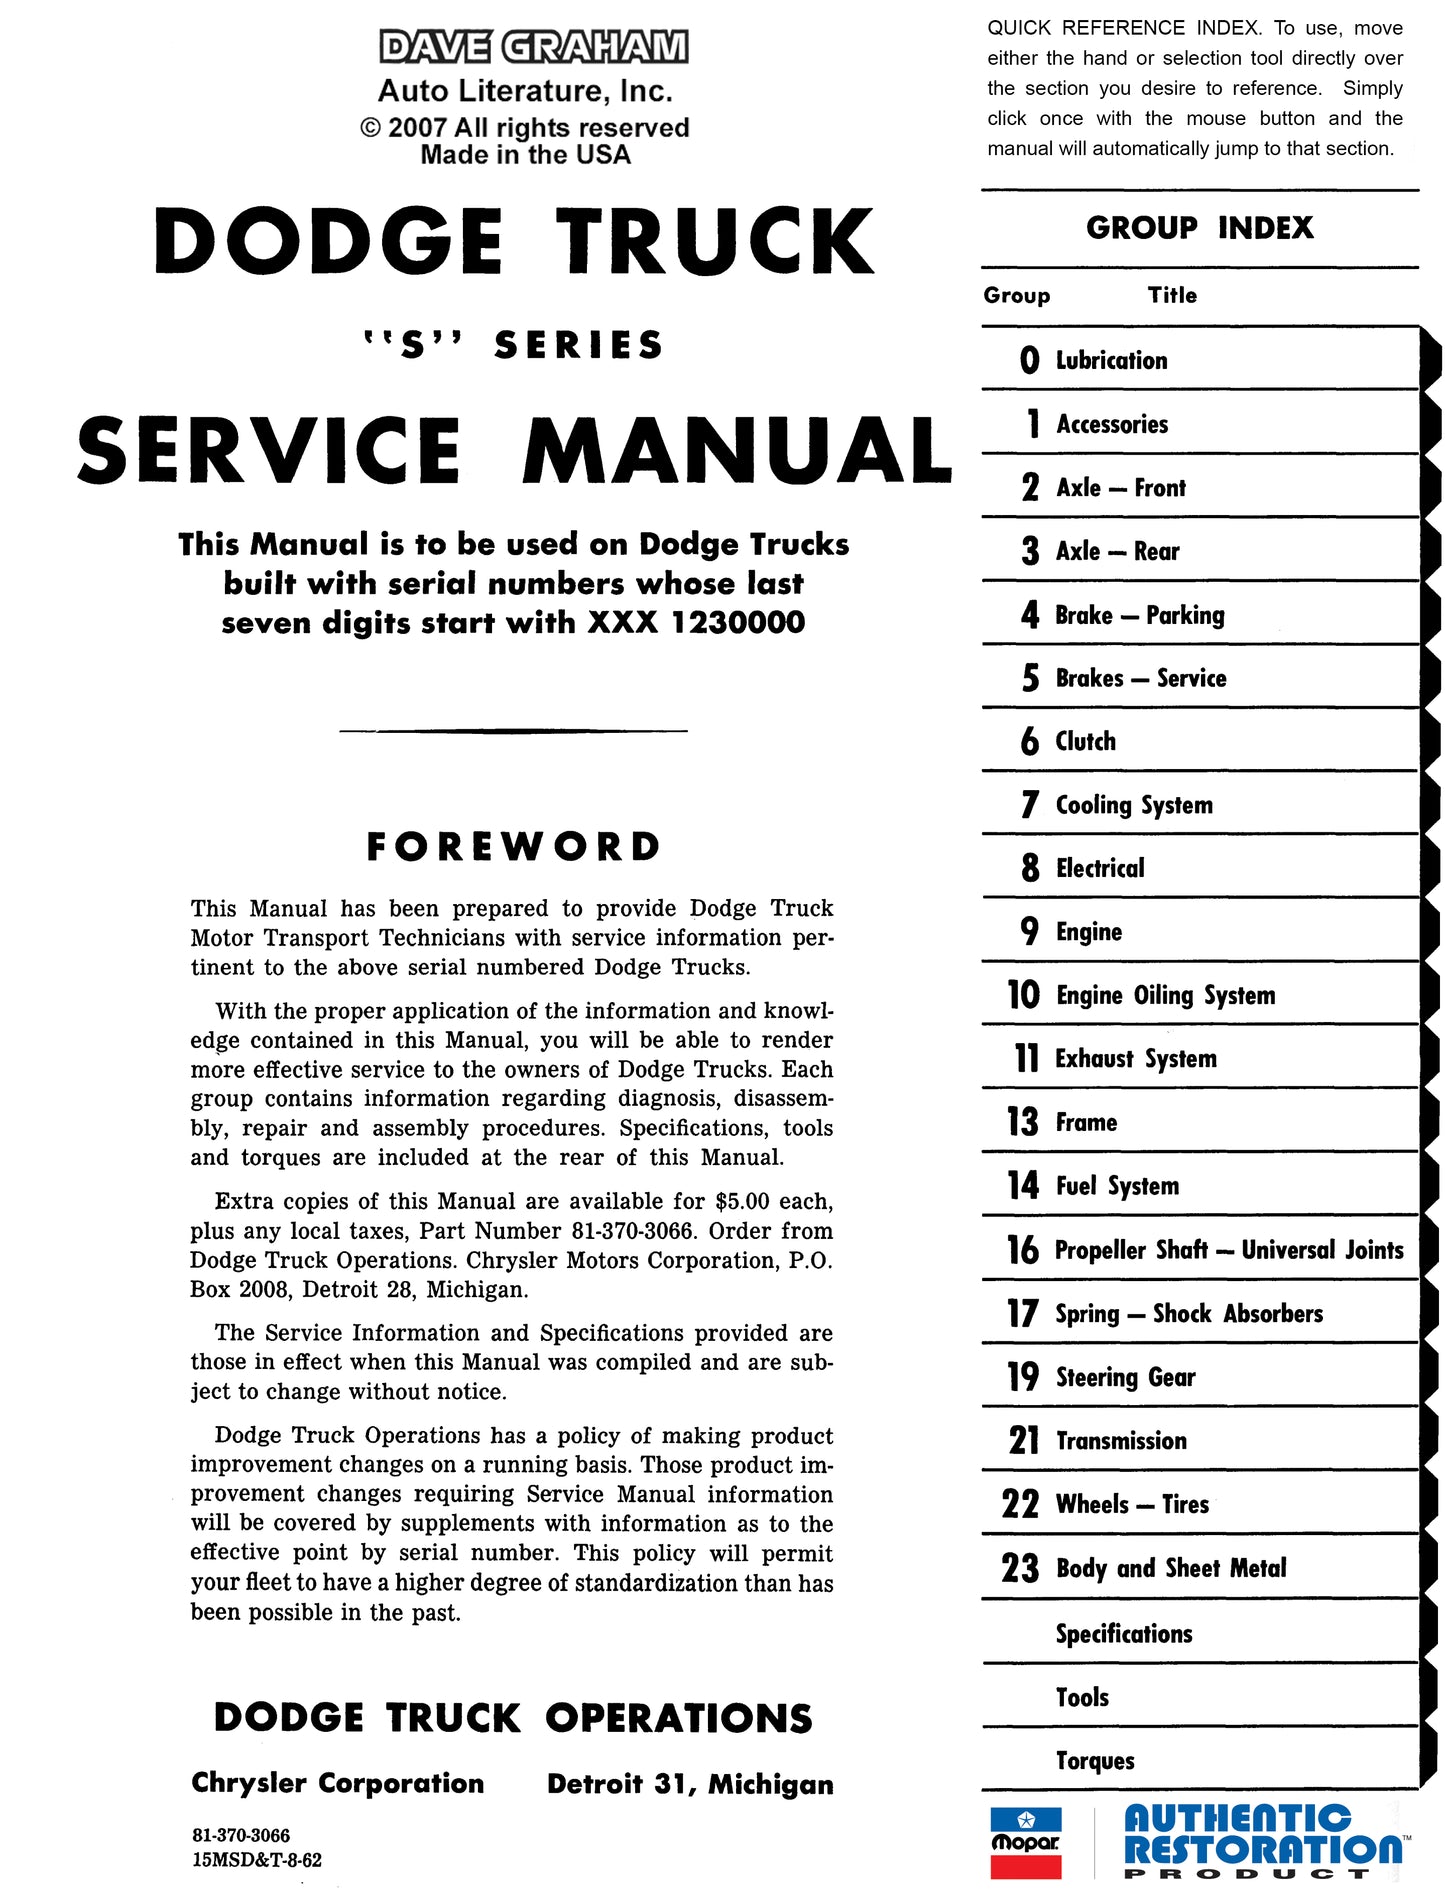 1963 Dodge Truck Shop Manual - All Models